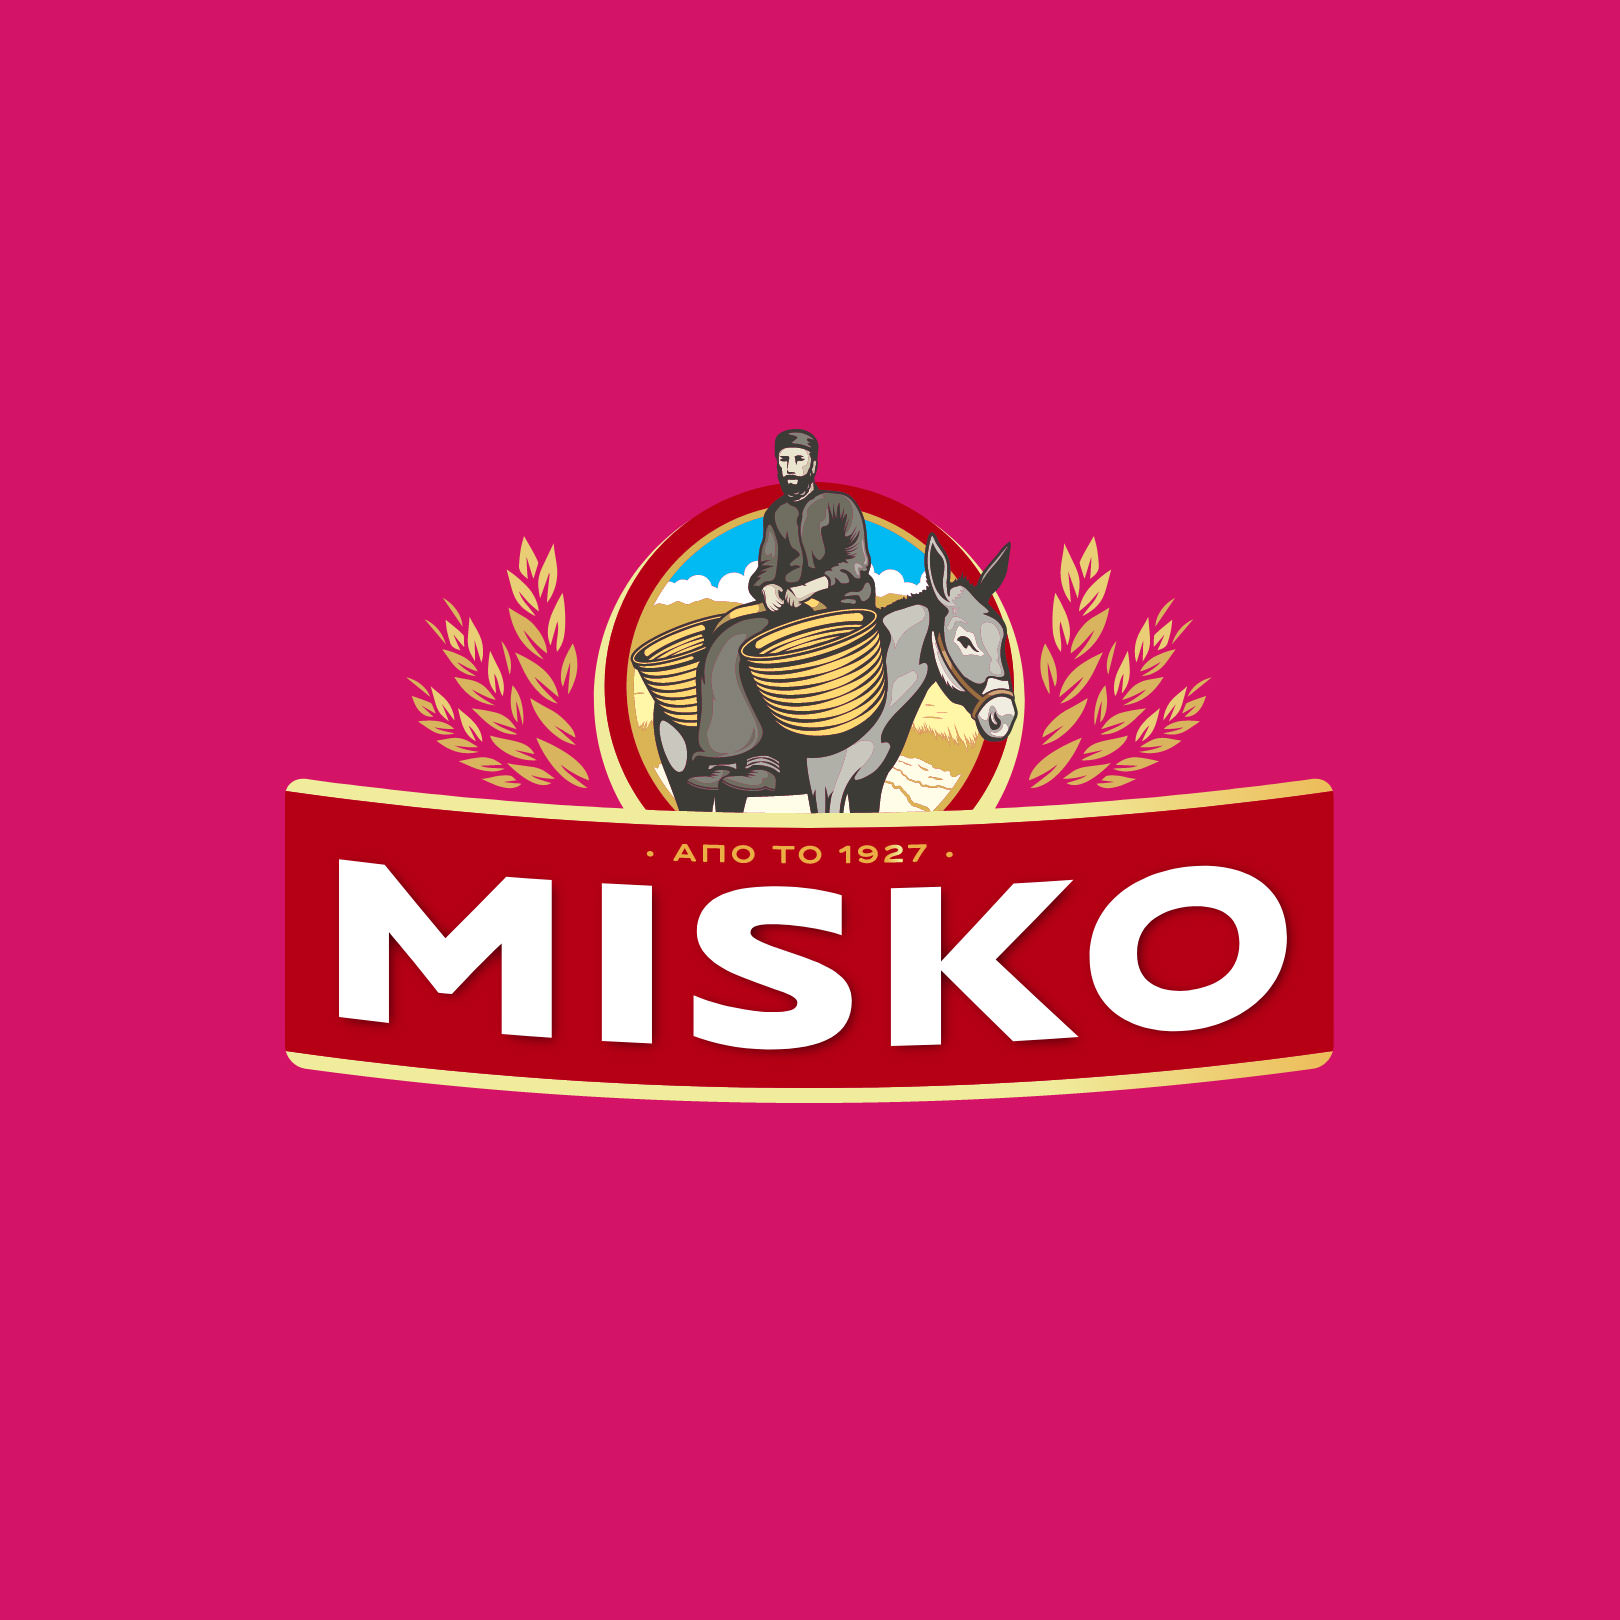 Misko